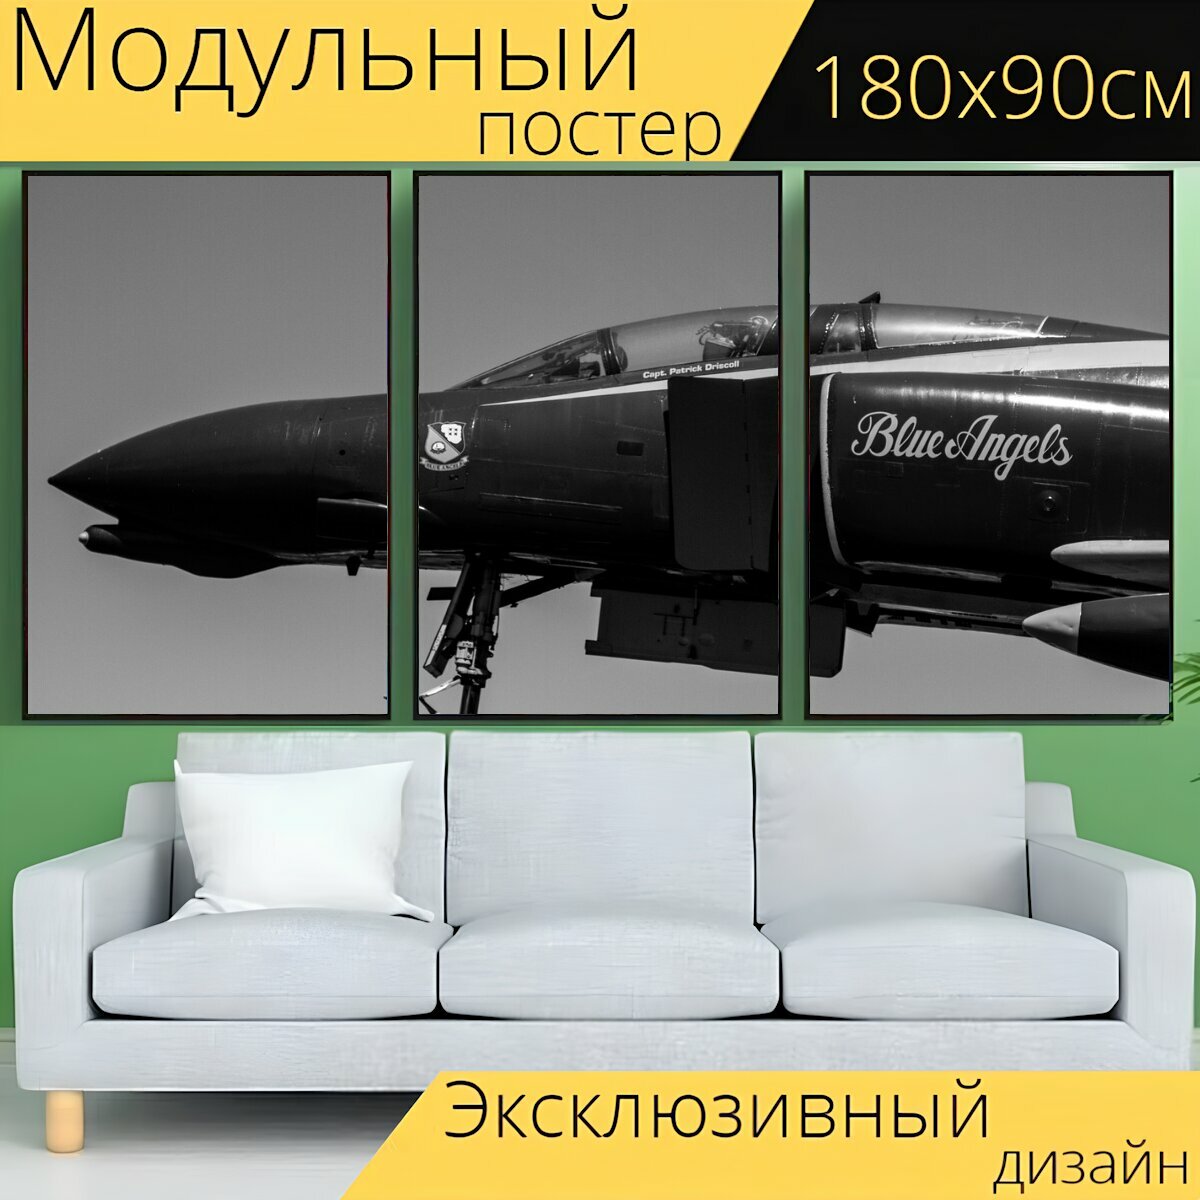 Модульный постер "Технология, самолет, летающий" 180 x 90 см. для интерьера